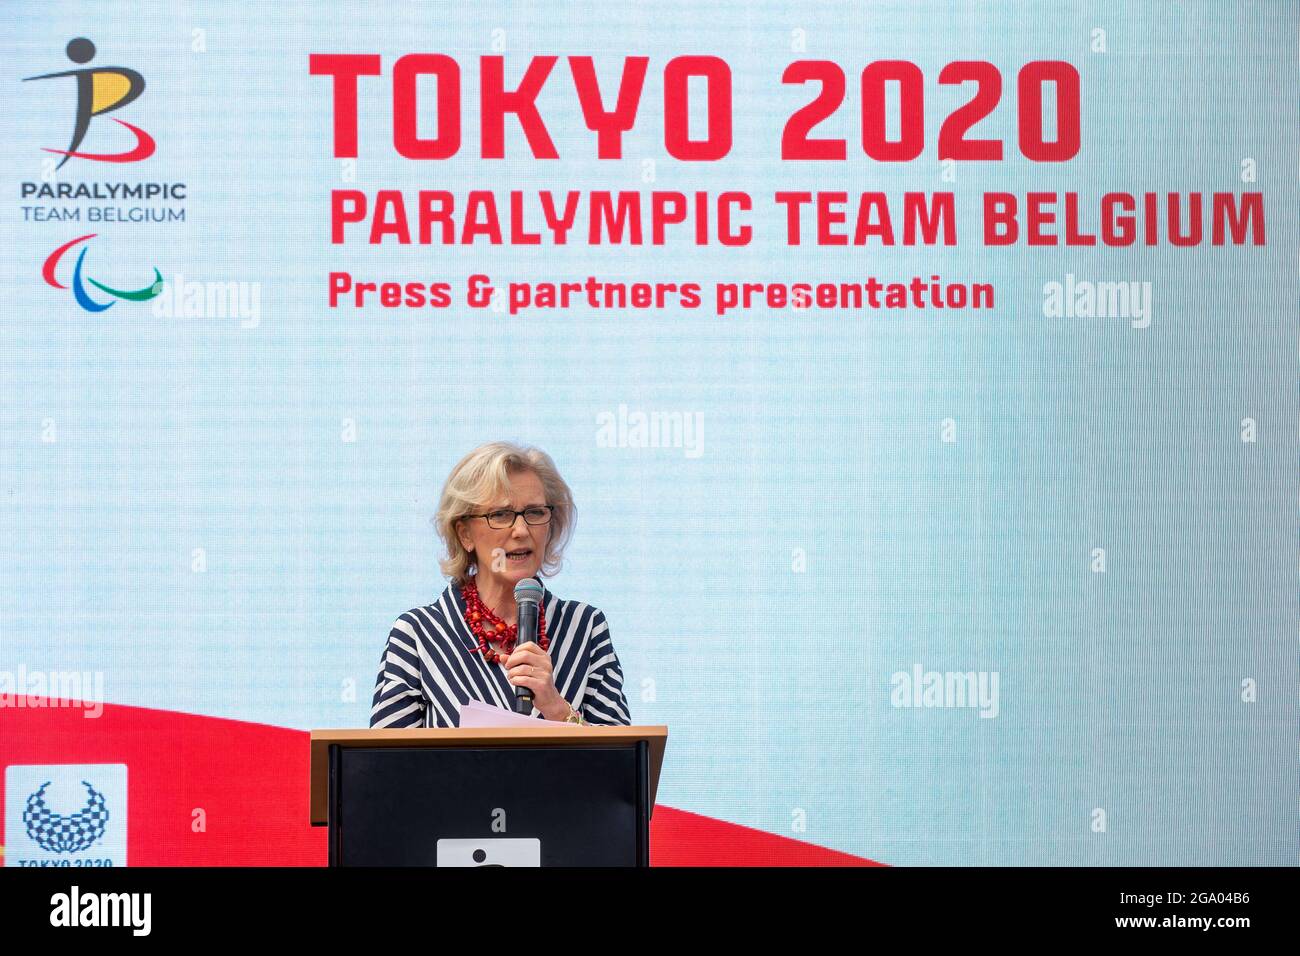 La principessa Astrid del Belgio ha tenuto un discorso in una presentazione stampa del Paralimpic Team Belgium, in vista dei Giochi Paralimpici di Tokyo 2020, lunedì Foto Stock